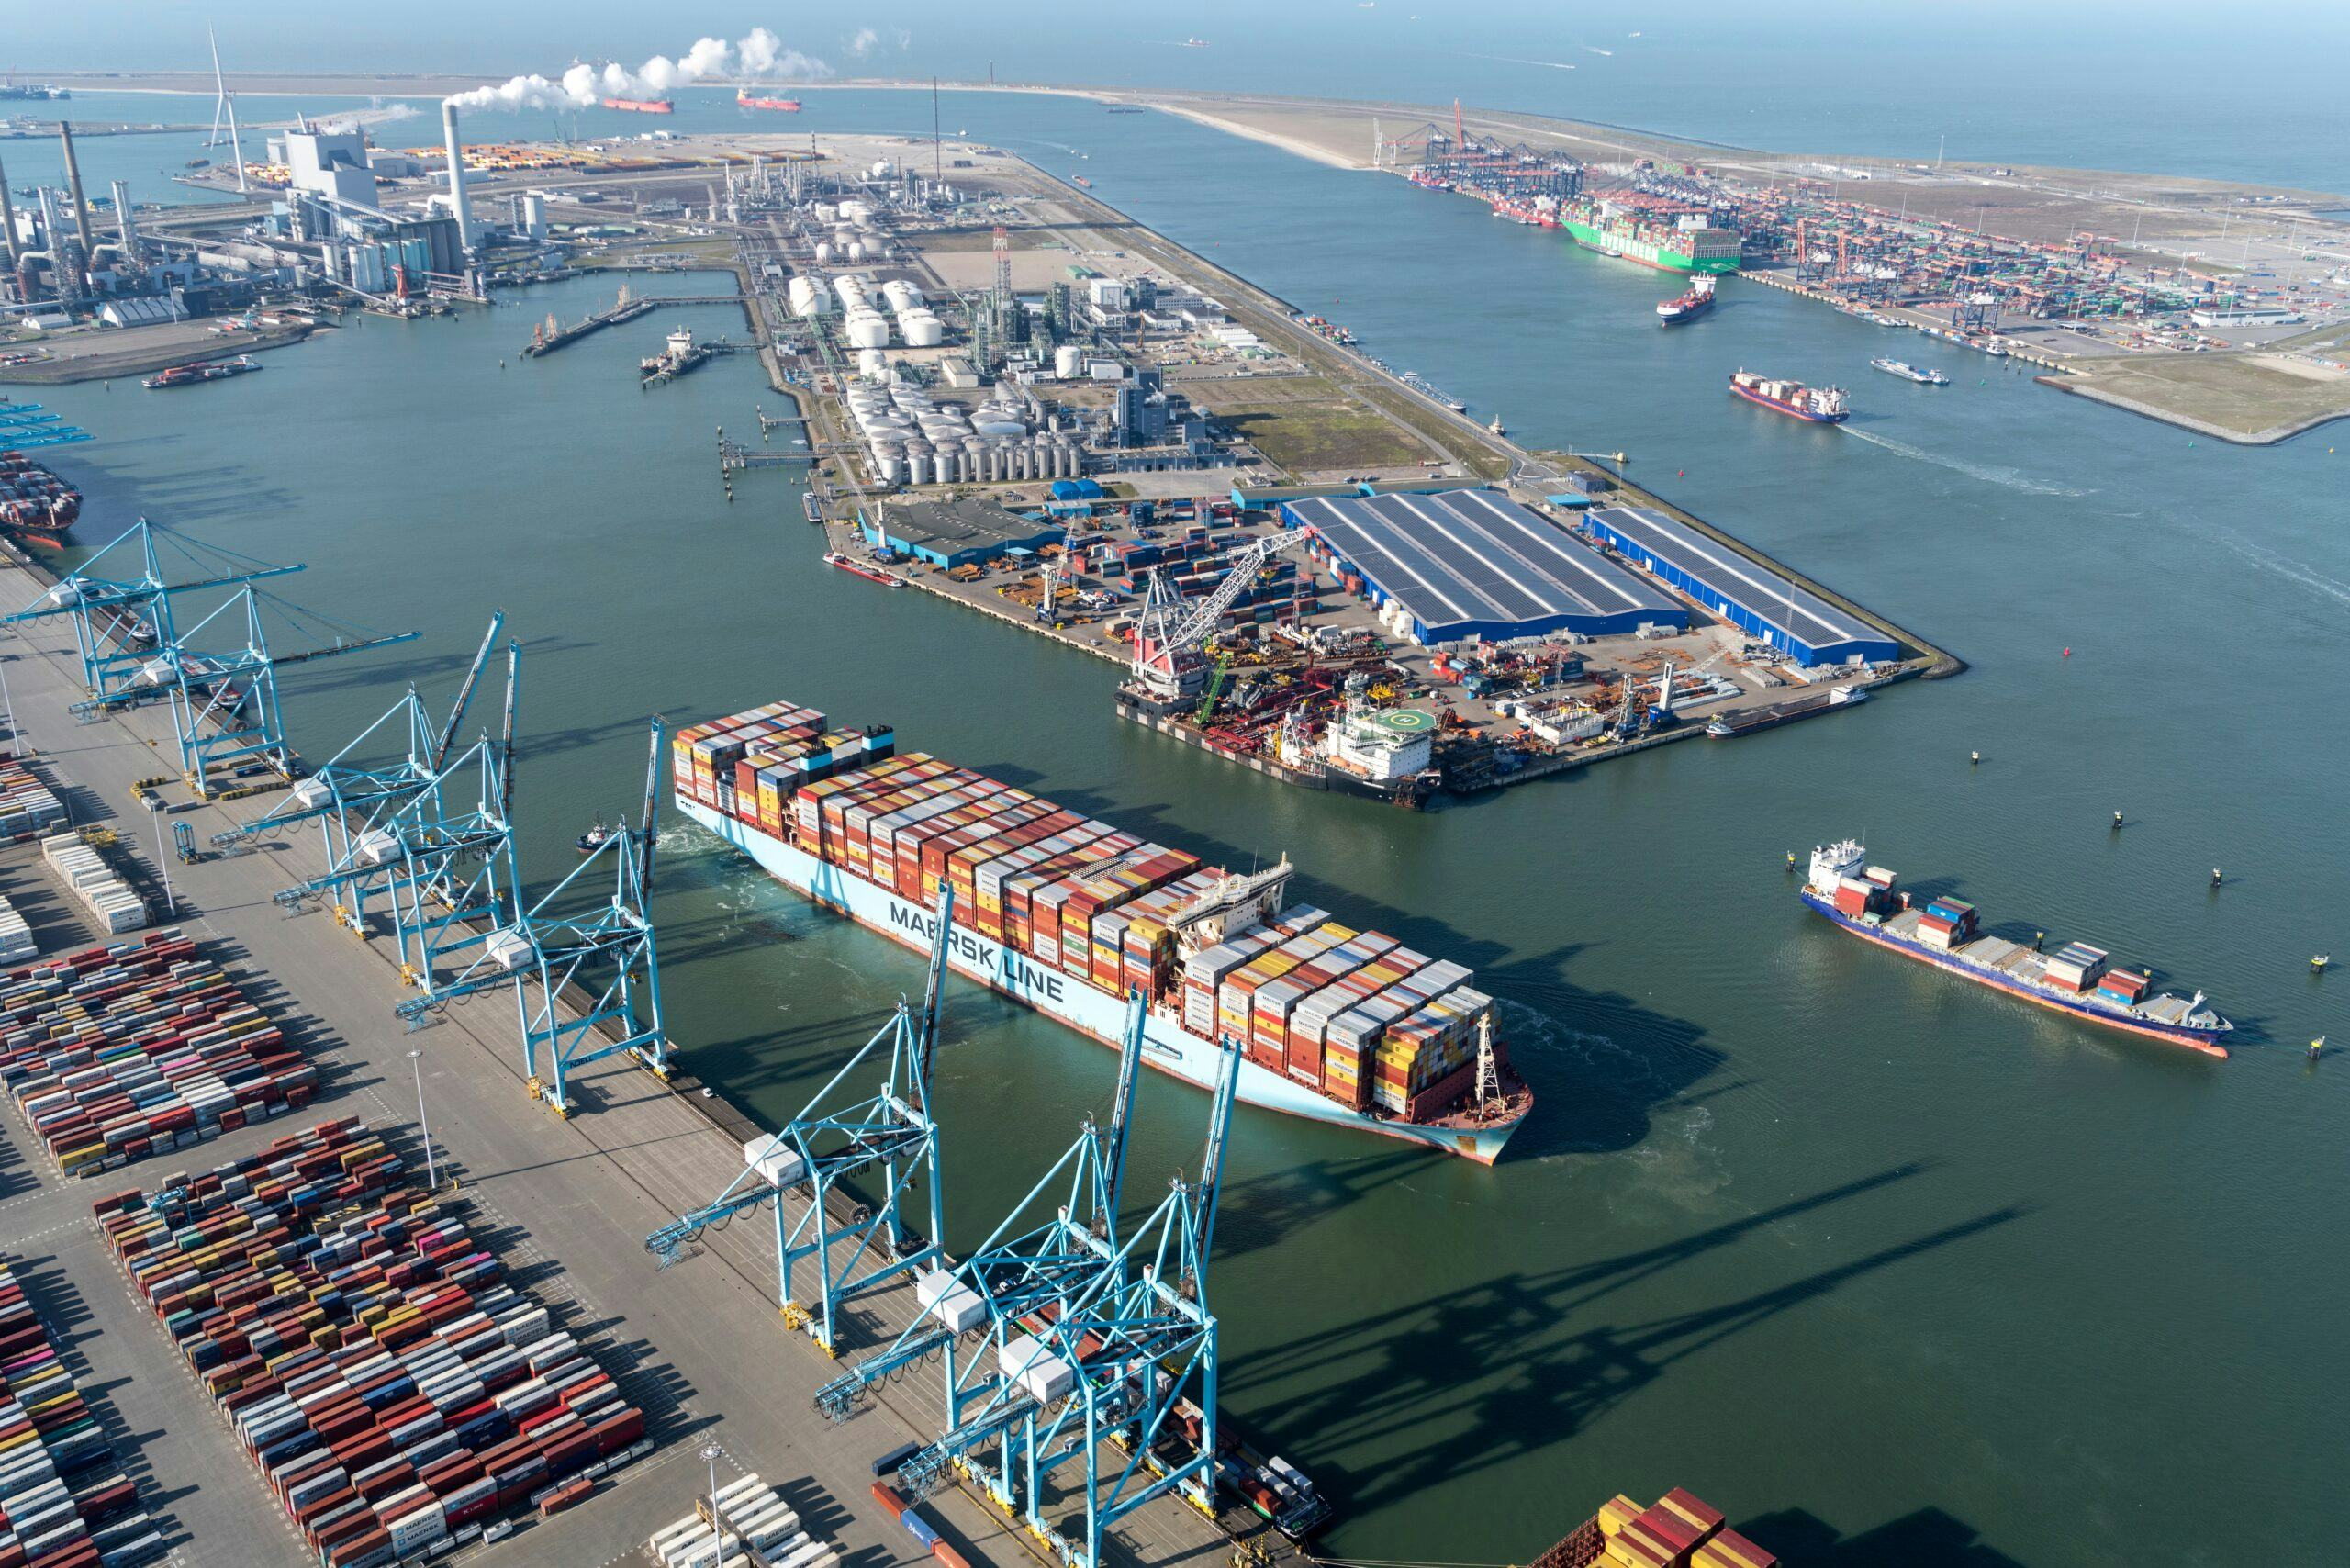 Binnenkomst van de Moscow Maersk op de Maasvlakte in Rotterdam vorig jaar februari. Dit mega-containerschip dat Maersk in 2017 in de vaart nam, heeft een capaciteit van 19.630 teu.